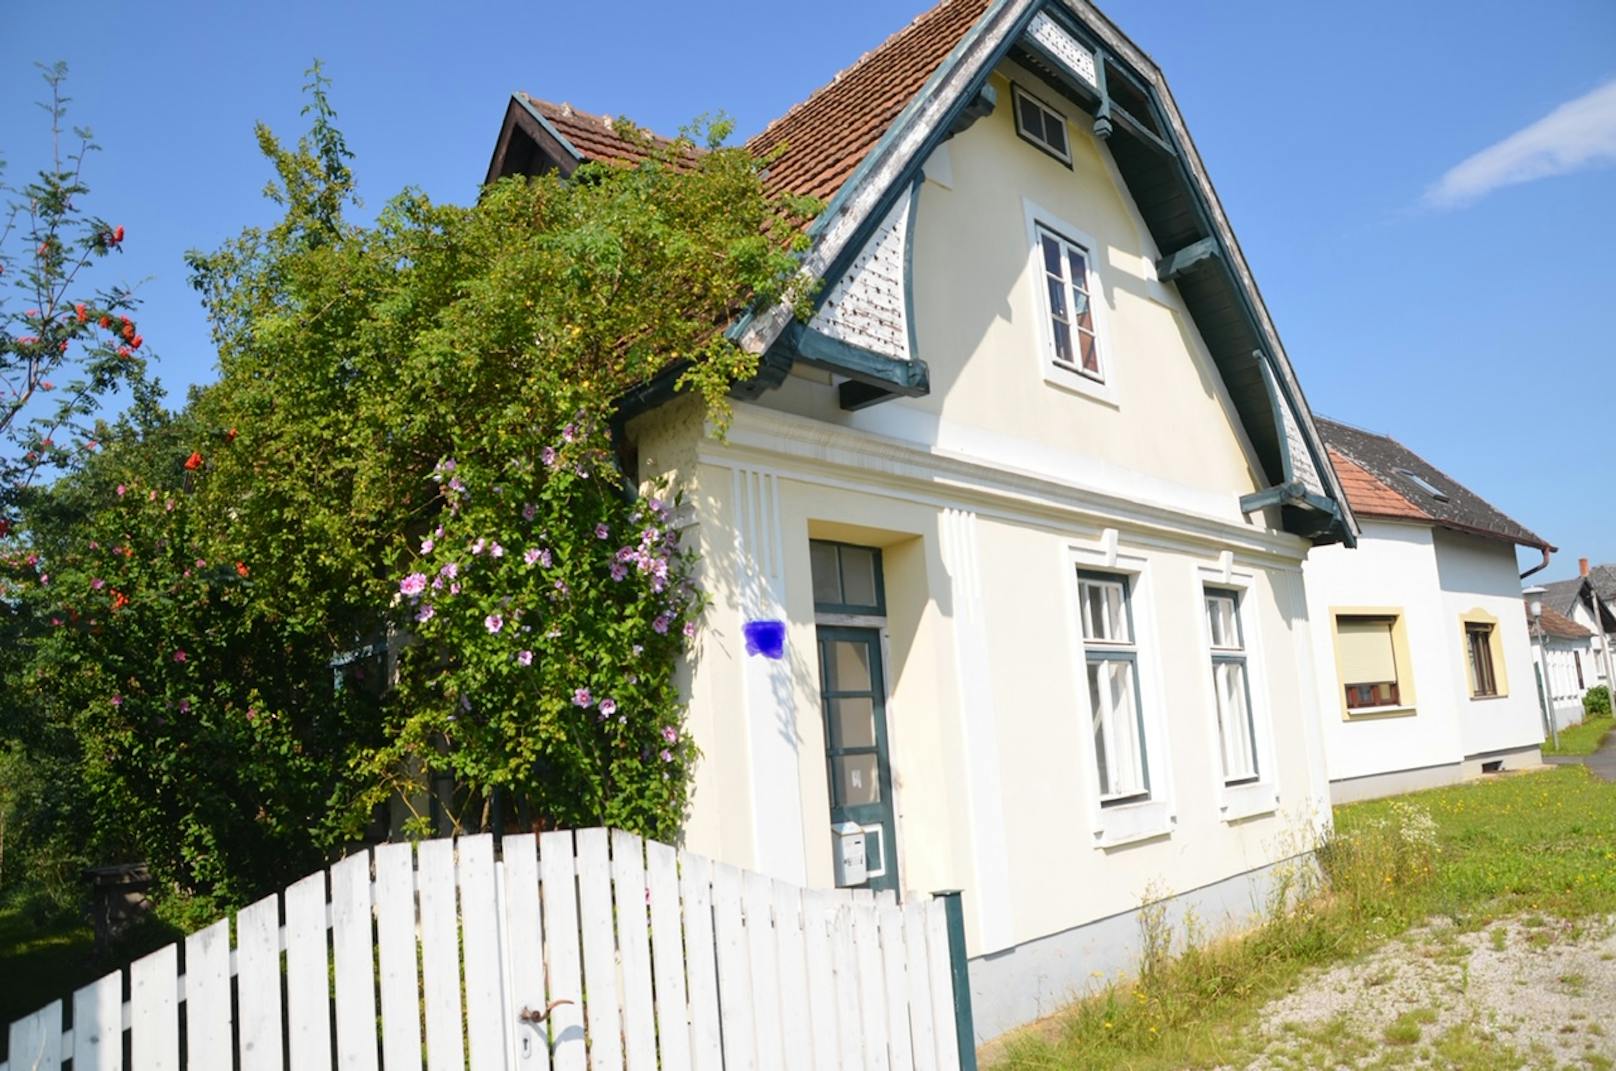 Eine weitere Immobilie der Familie in Strebersdorf wurde von den Ermittlern amtlich versiegelt